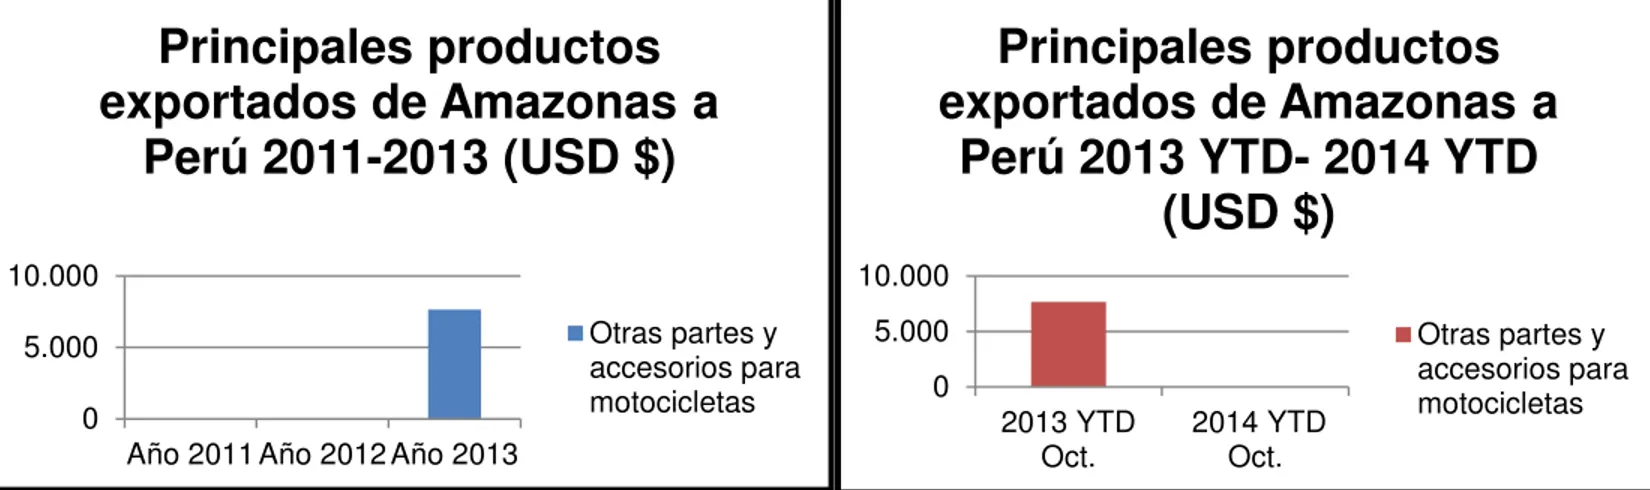 Ilustración 13: Principales productos exportados de Amazonas a Perú 2011-2014 YTD 